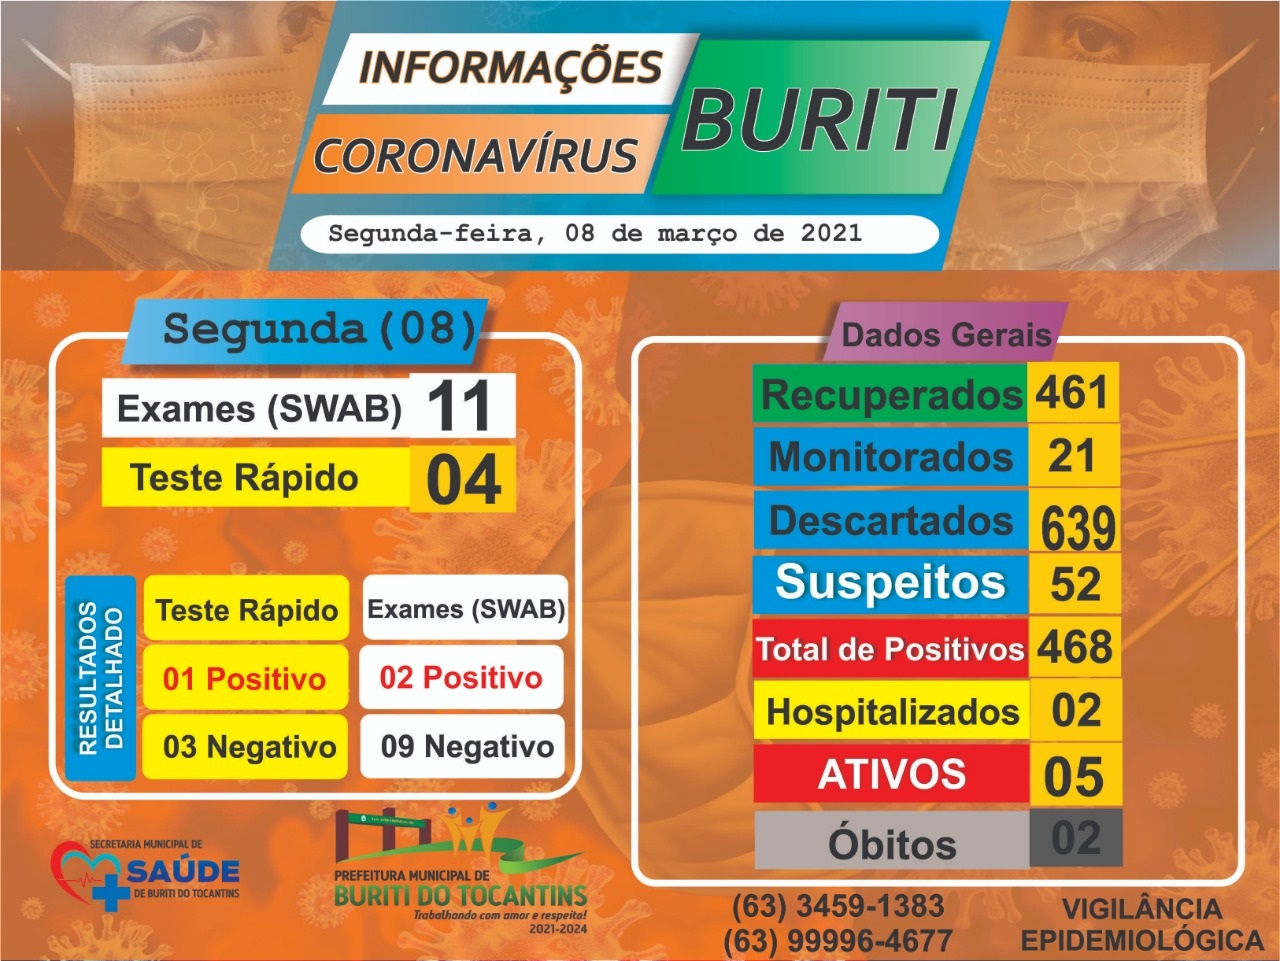 SAÚDE: Boletim e Informações COVID-19 da cidade de Buriti do Tocantins do dia 08 de março de 2021.